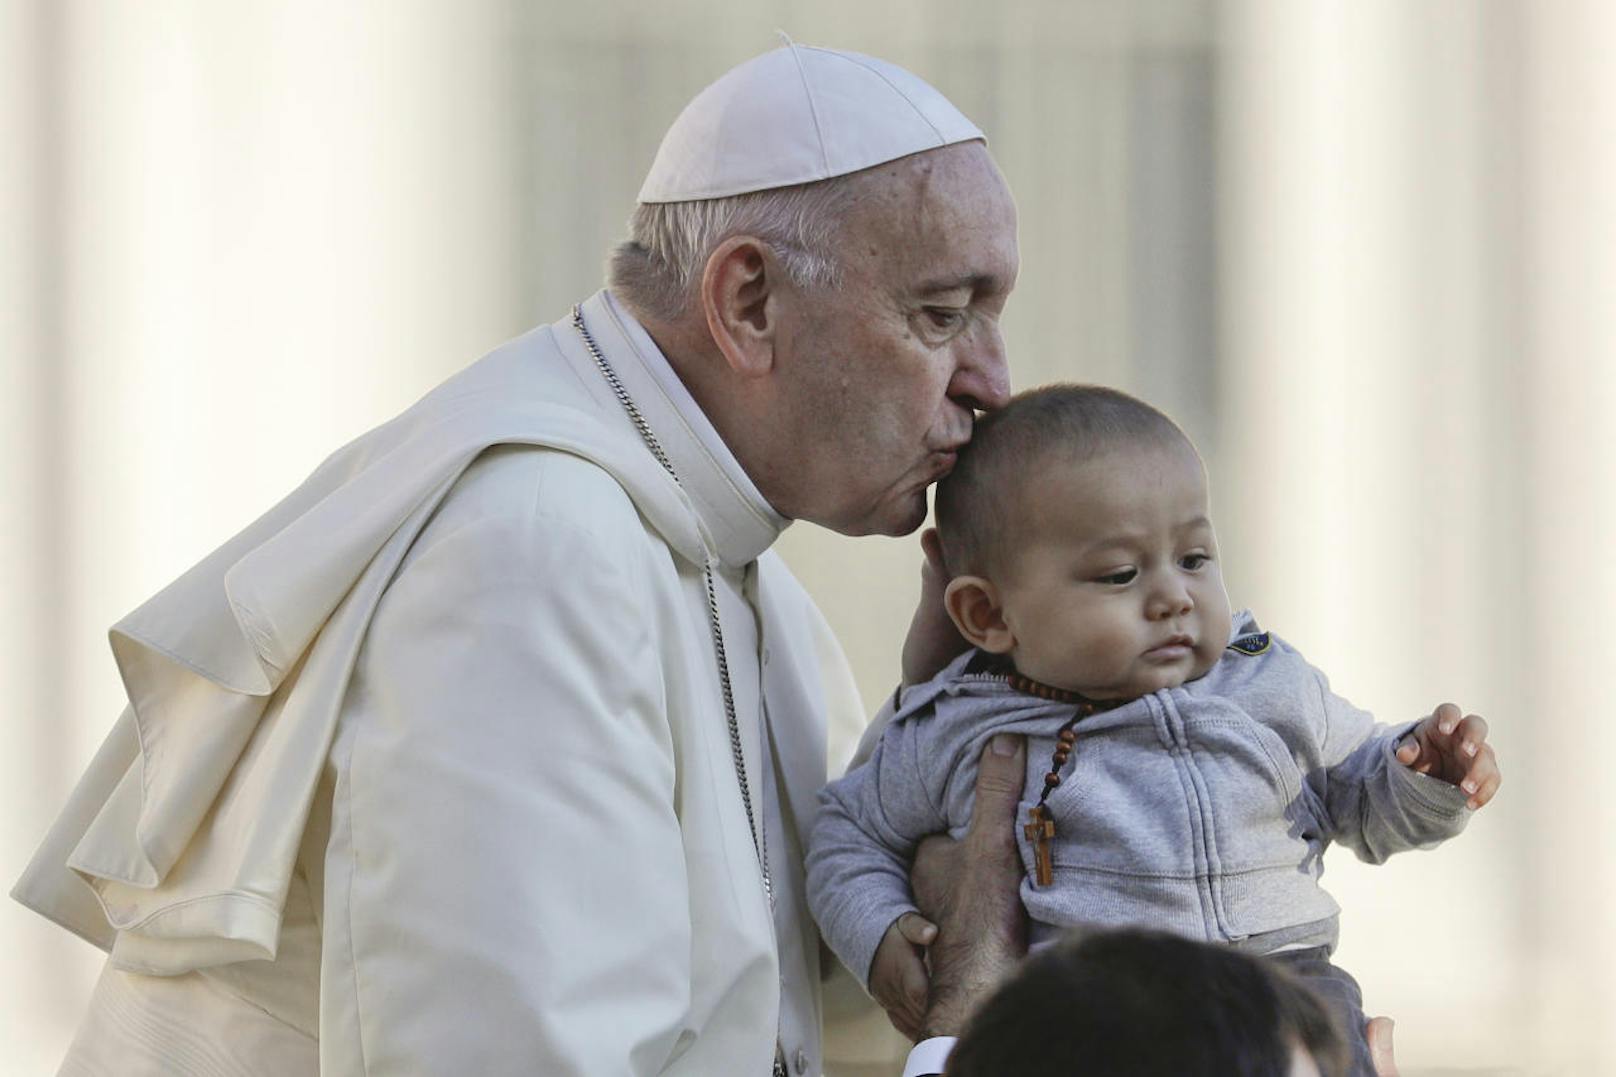 "Einen Menschen zu beseitigen ist wie die Inanspruchnahme eines Auftragsmörders, um ein Problem zu lösen", sagte Papst Franziskus